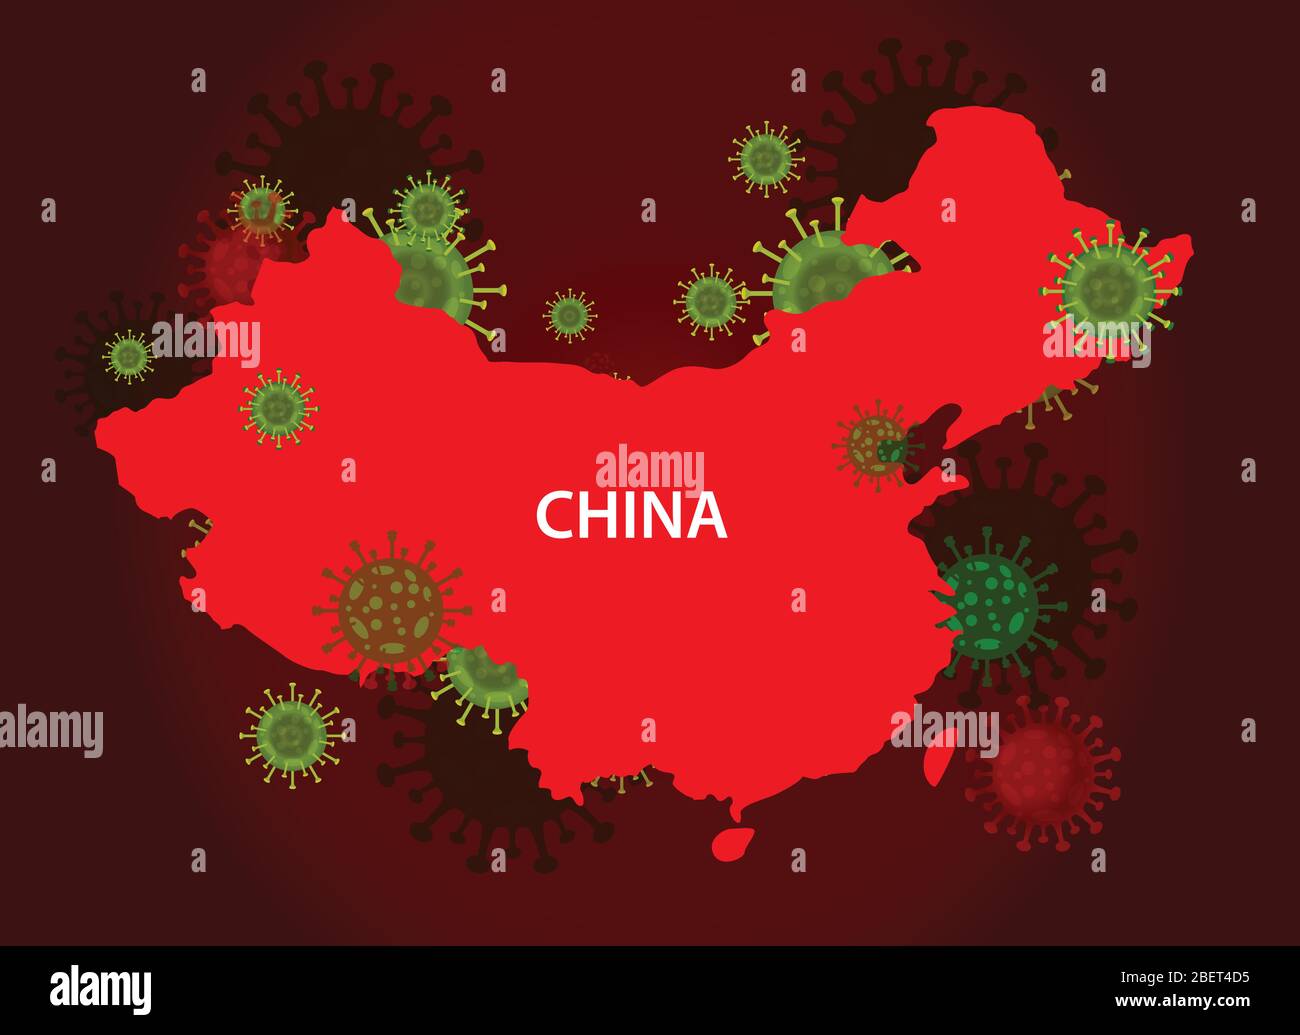 China-Karte mit Covid-19-Virenkonzept. Coronavirus ist auf der ganzen Welt verbreitet und in allen Ländern infiziert. Vektor-Illustration der roten Karte desig Stock Vektor